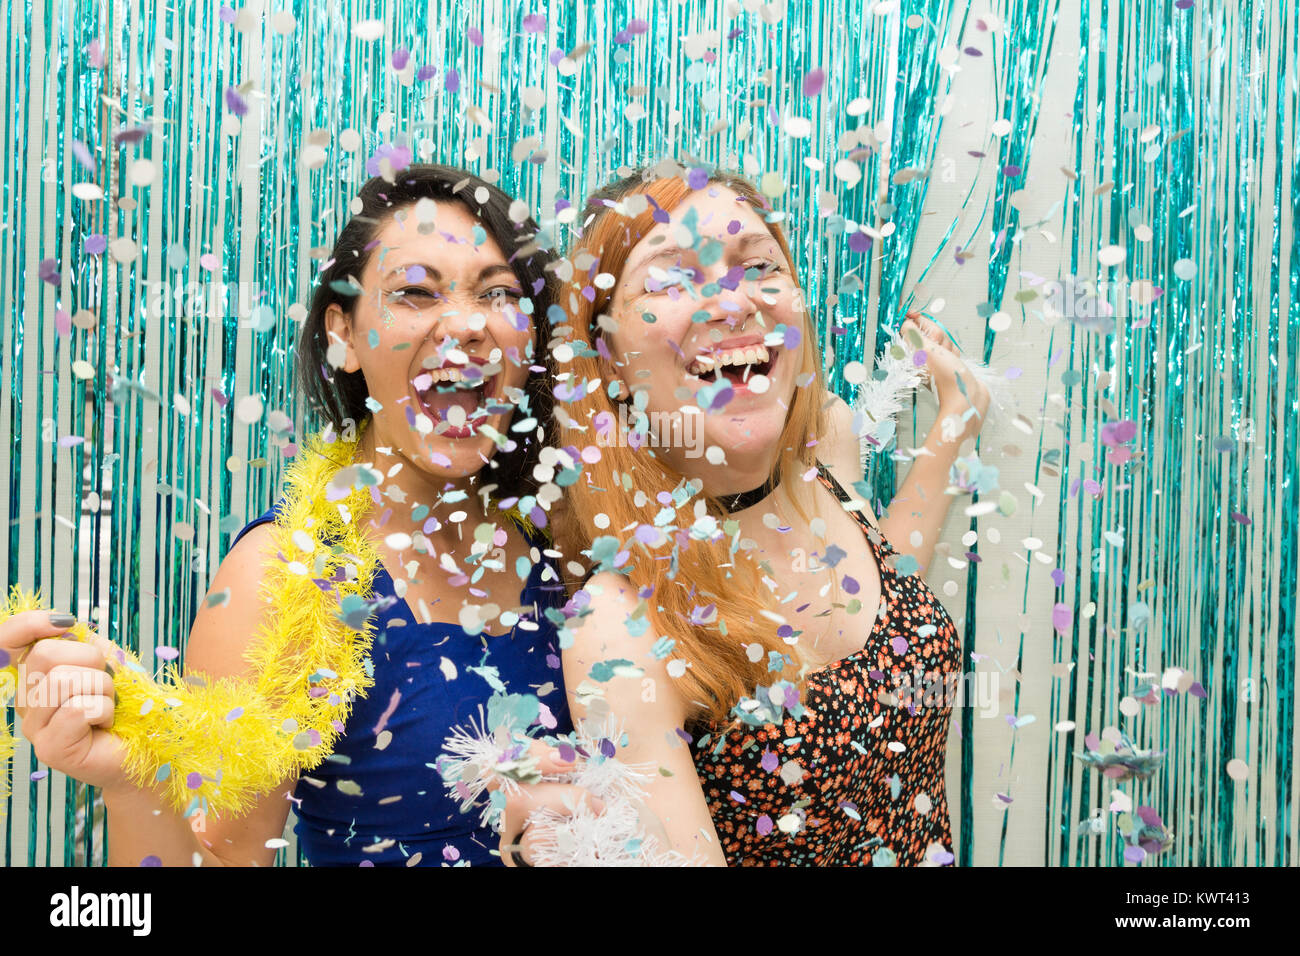 Zwei Frauen, eine Kaukasische und eine orientalische, Feiern Karneval in Brasilien. Viel Freude mit dem Regen aus Konfetti. Die Mädchen sind euphorisch. Stockfoto